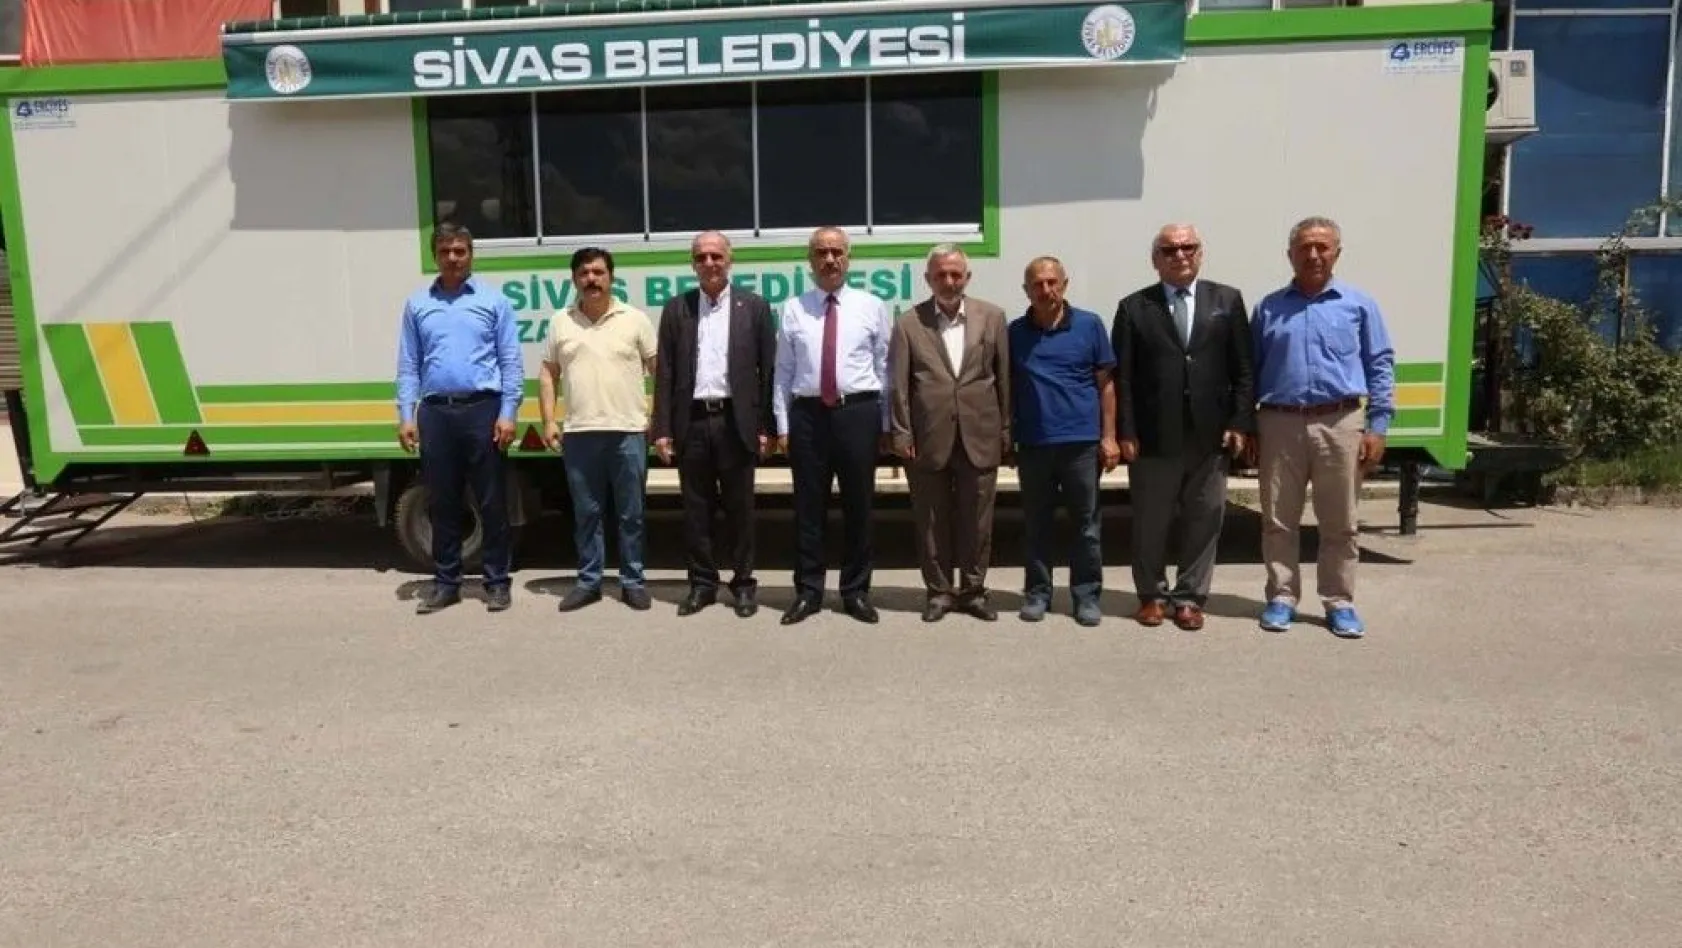 Sivas Belediyesi'ne hediye taziye aracı
